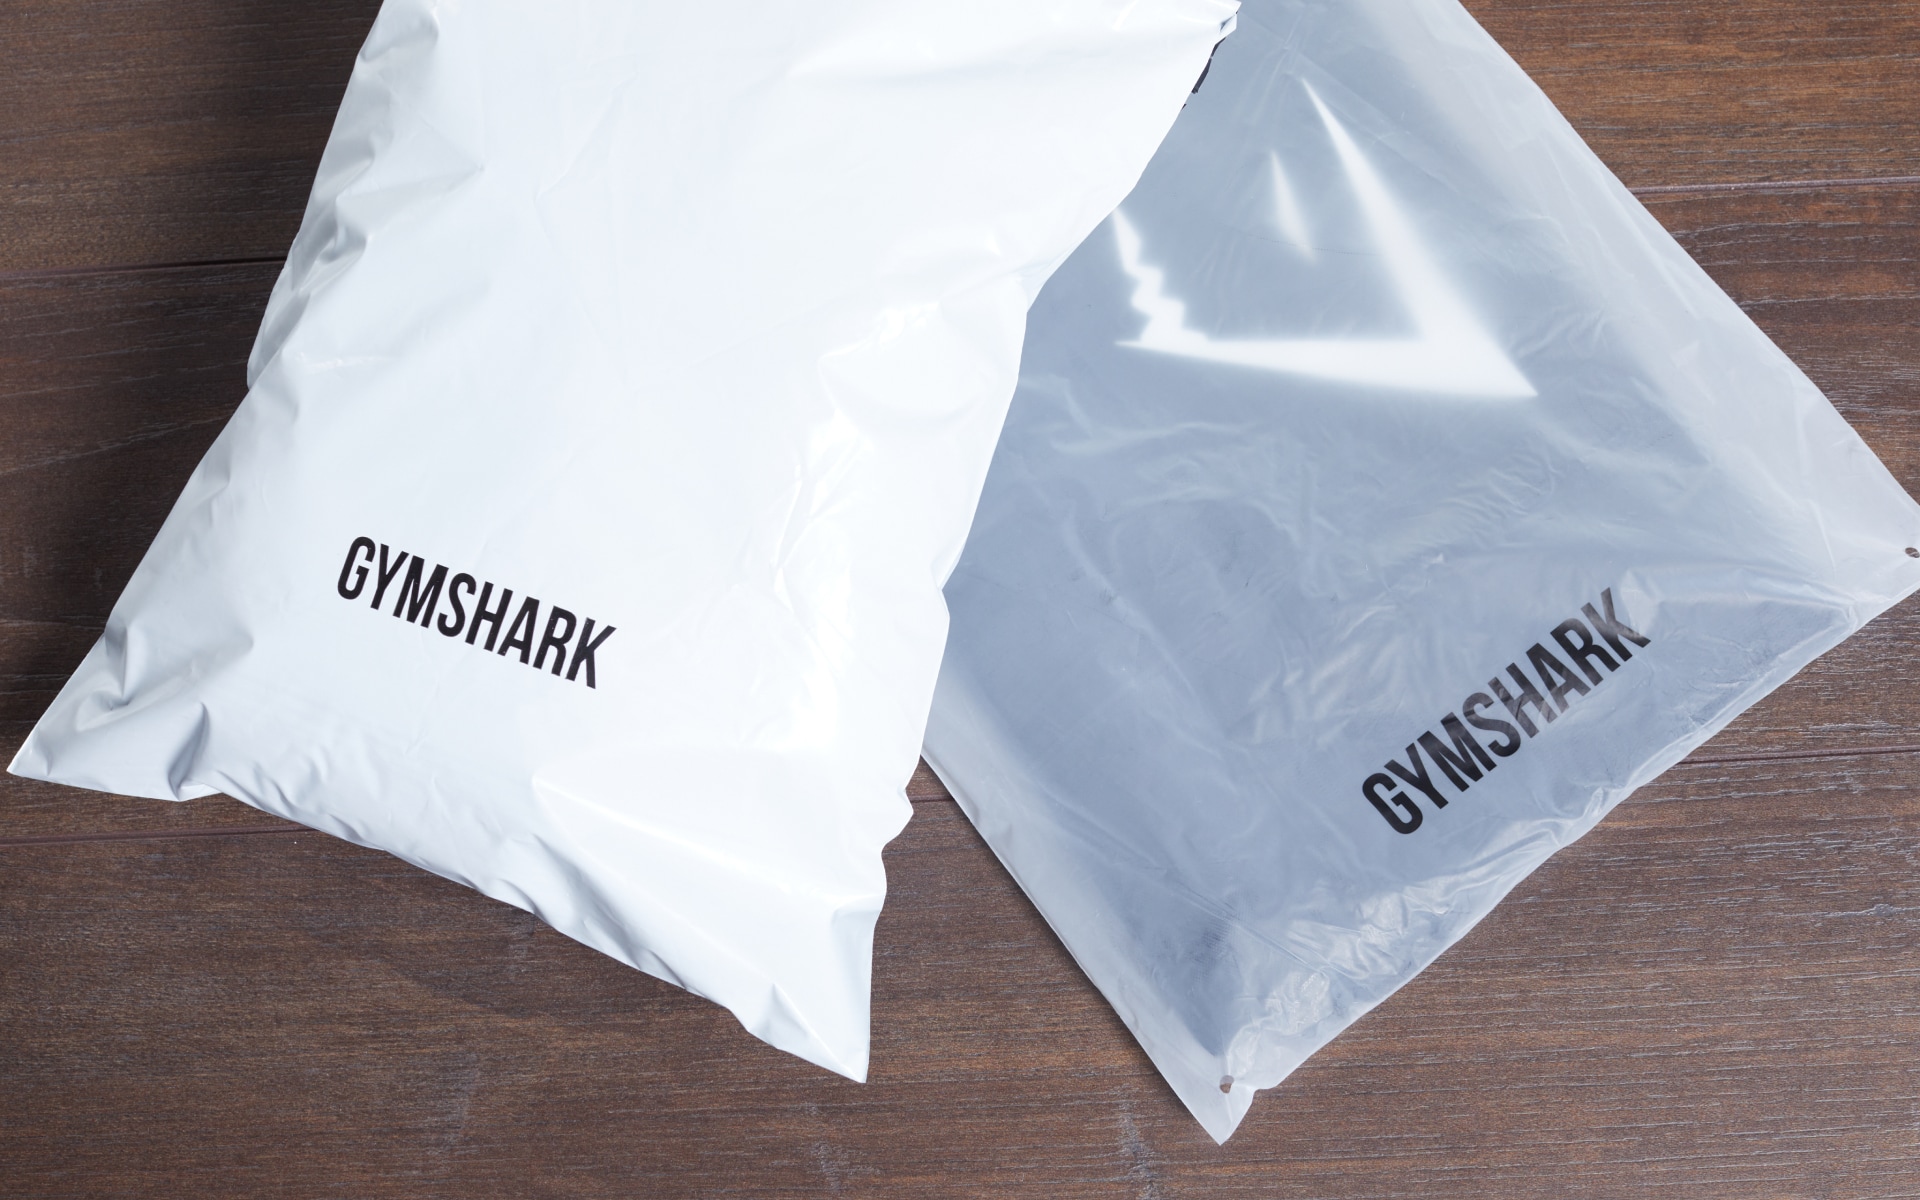 Gymshark packaging bags 